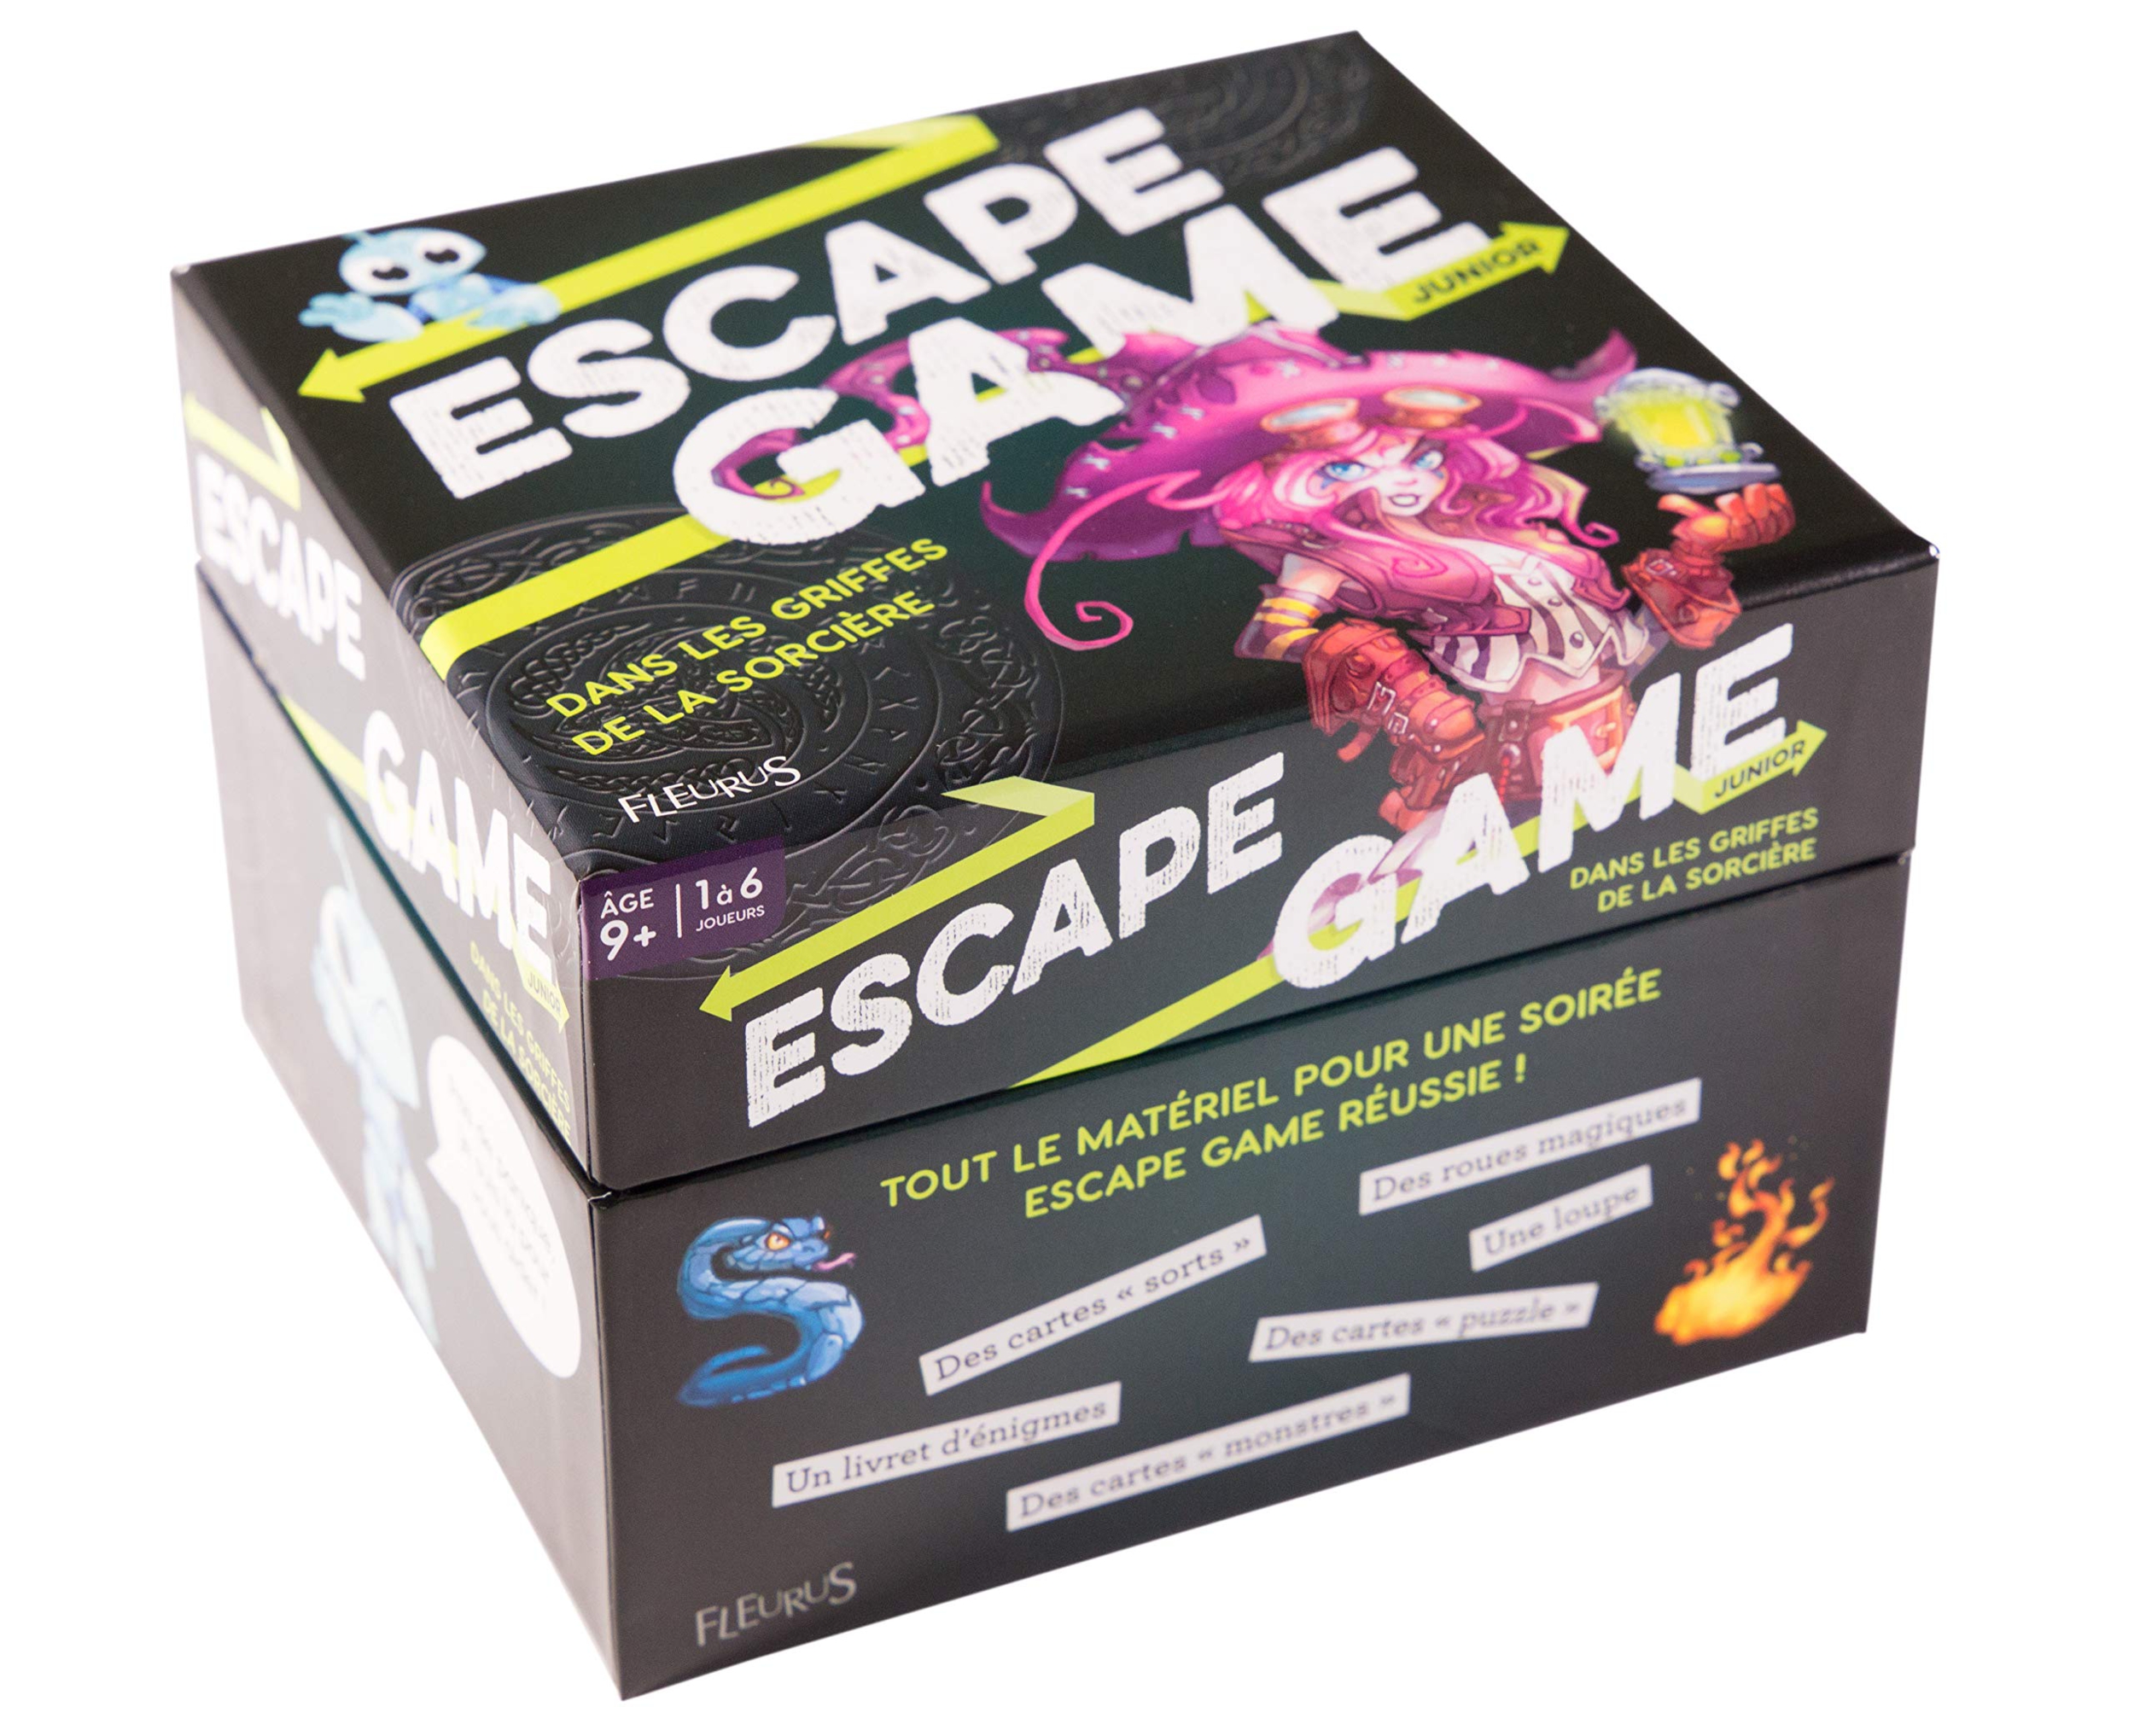 Dans les griffes de la sorcière - Escape Game - Great Escape - Côté 1